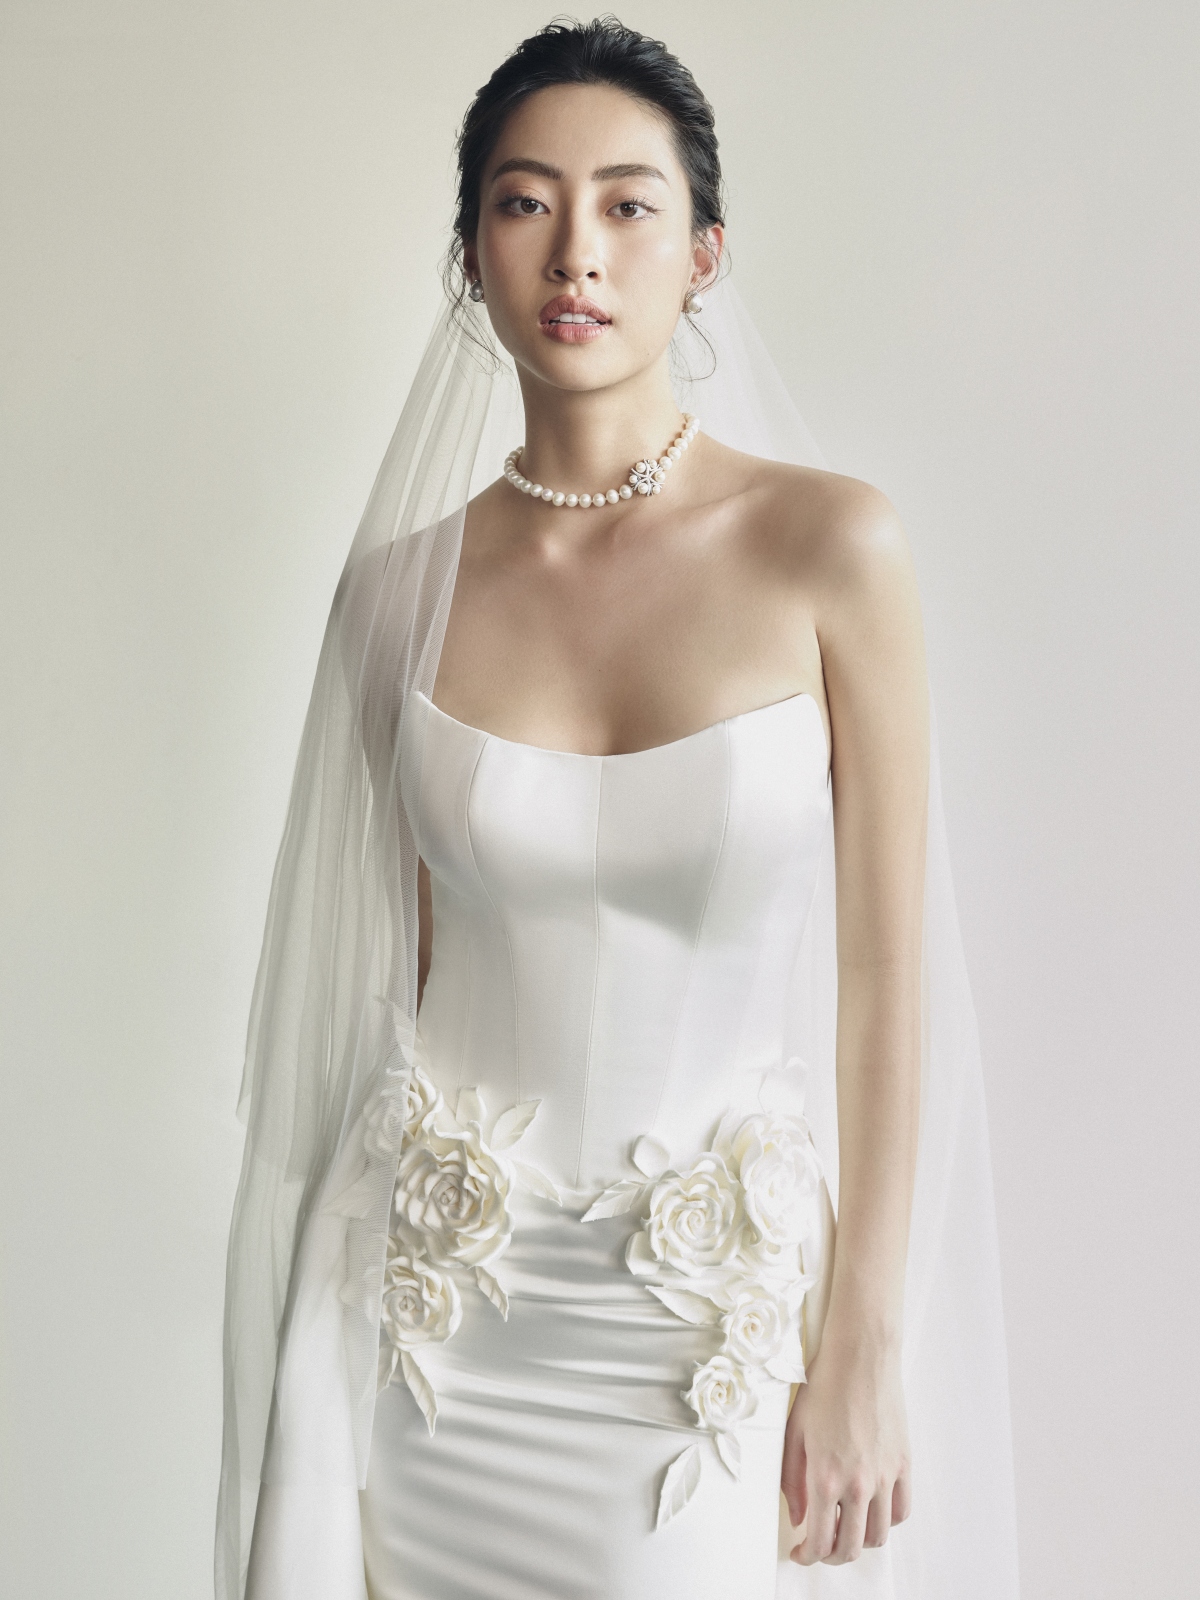 Hoa hậu Lương Thùy Linh làm cô dâu đẹp thanh khiết trong bộ ảnh mới - Ảnh 9.